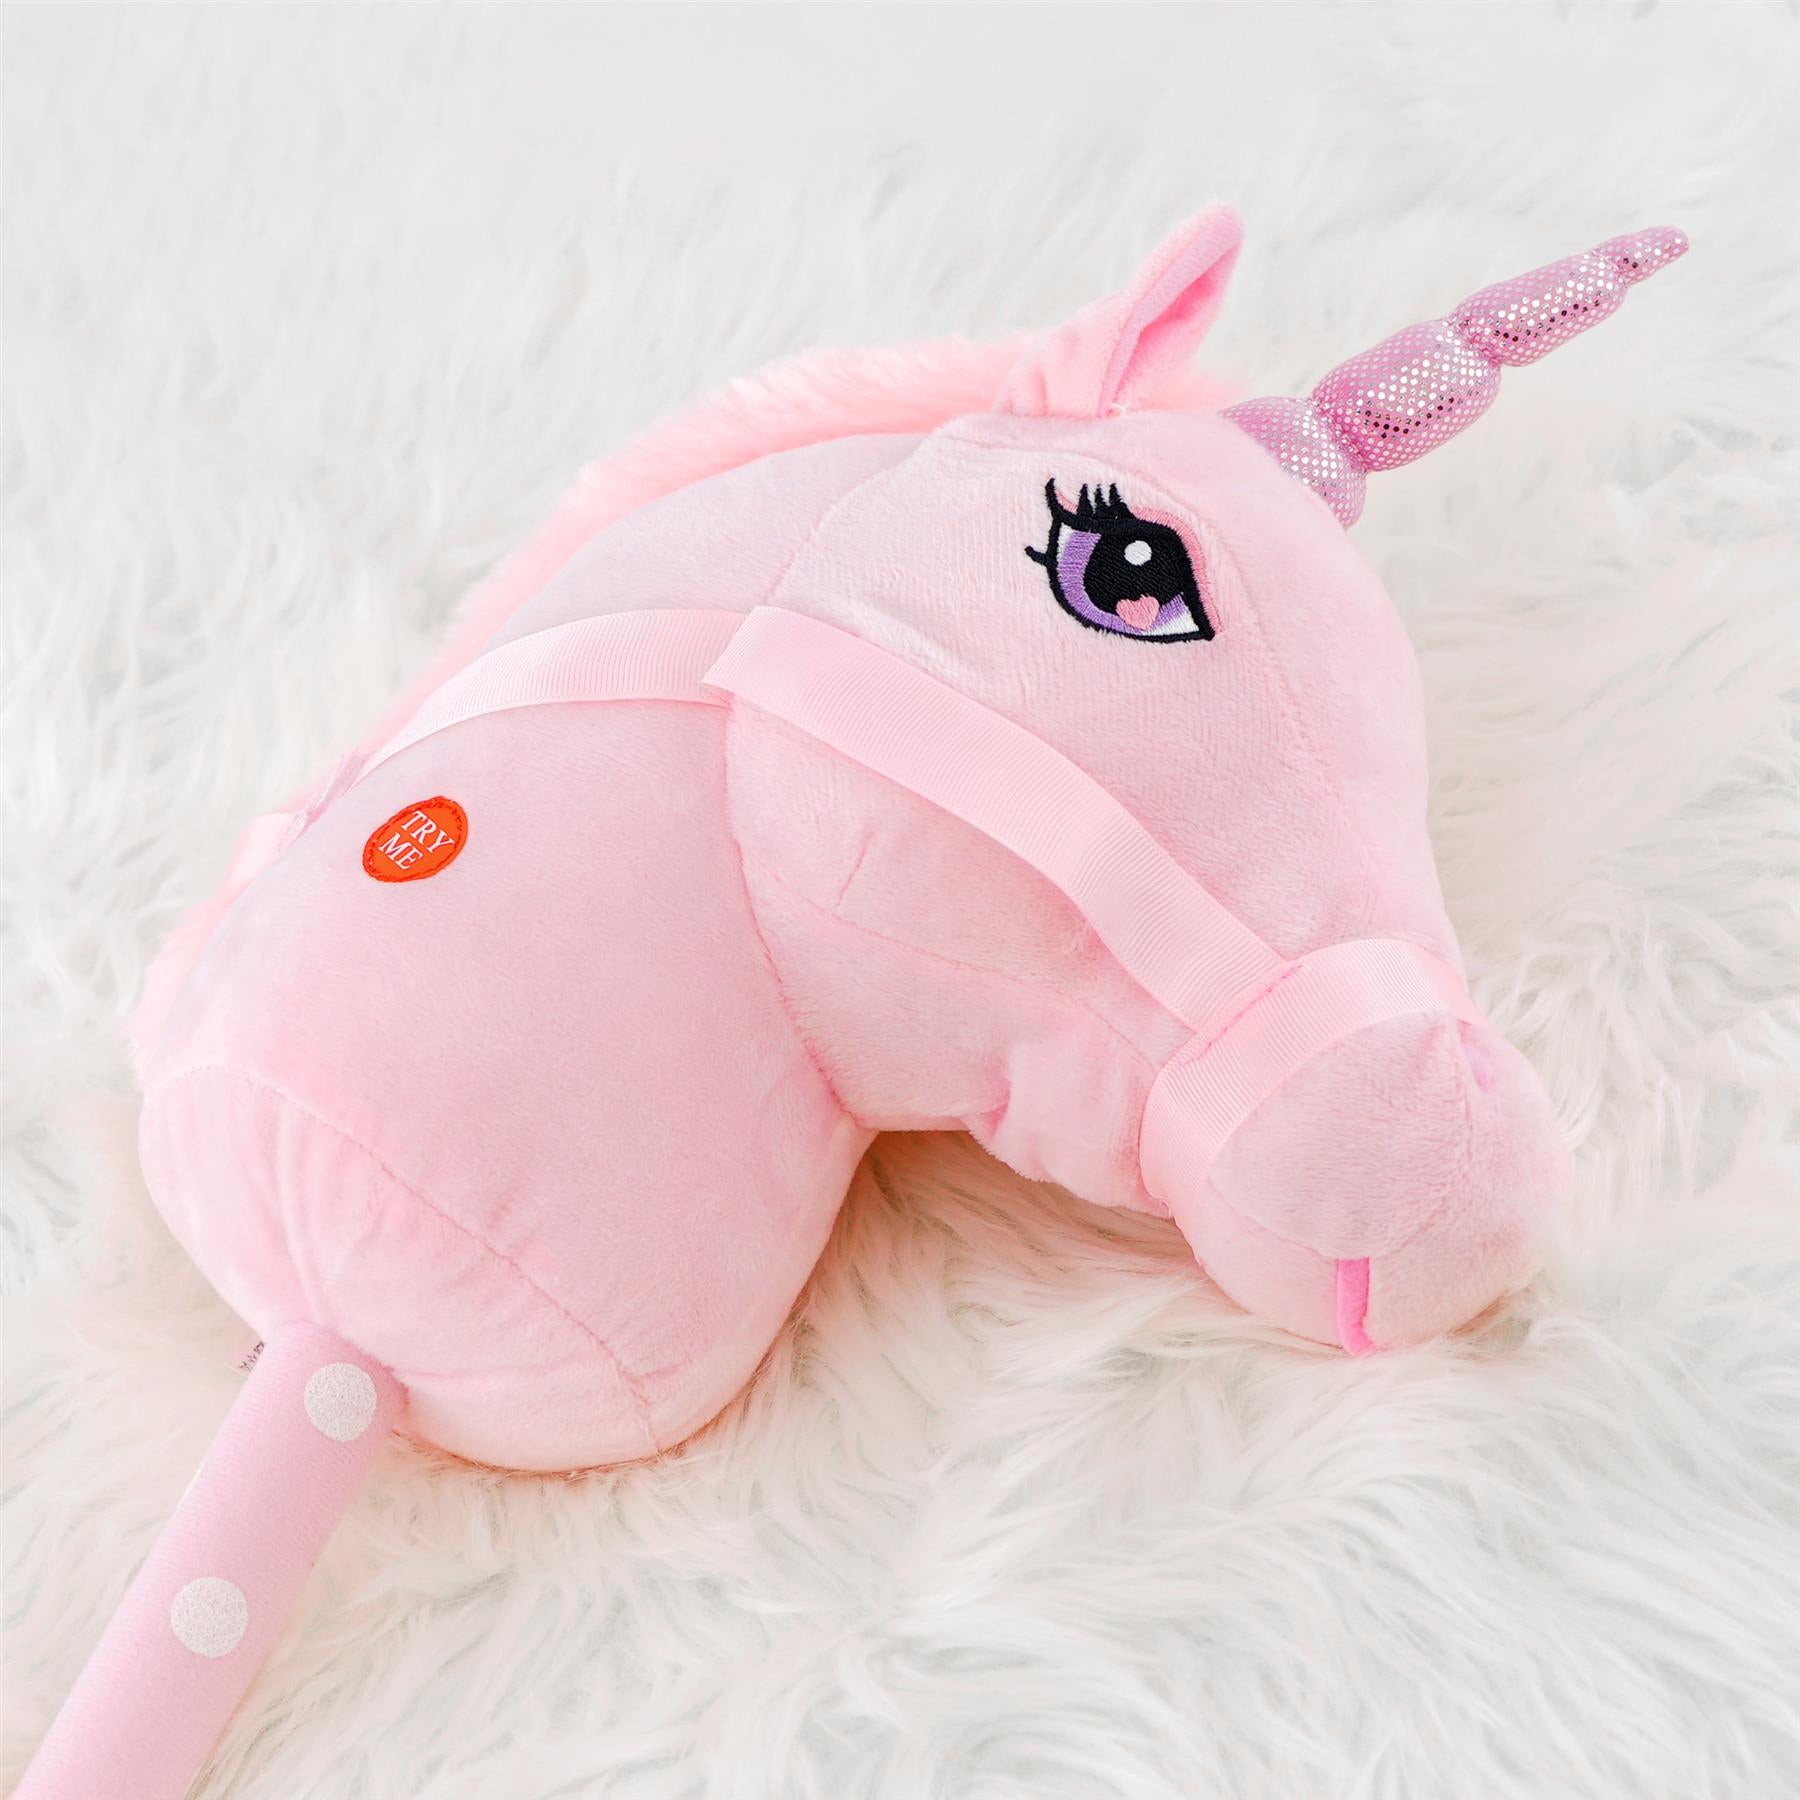 Pink Hobby Horse Unicorn by The Magic Toy Shop - UKBuyZone